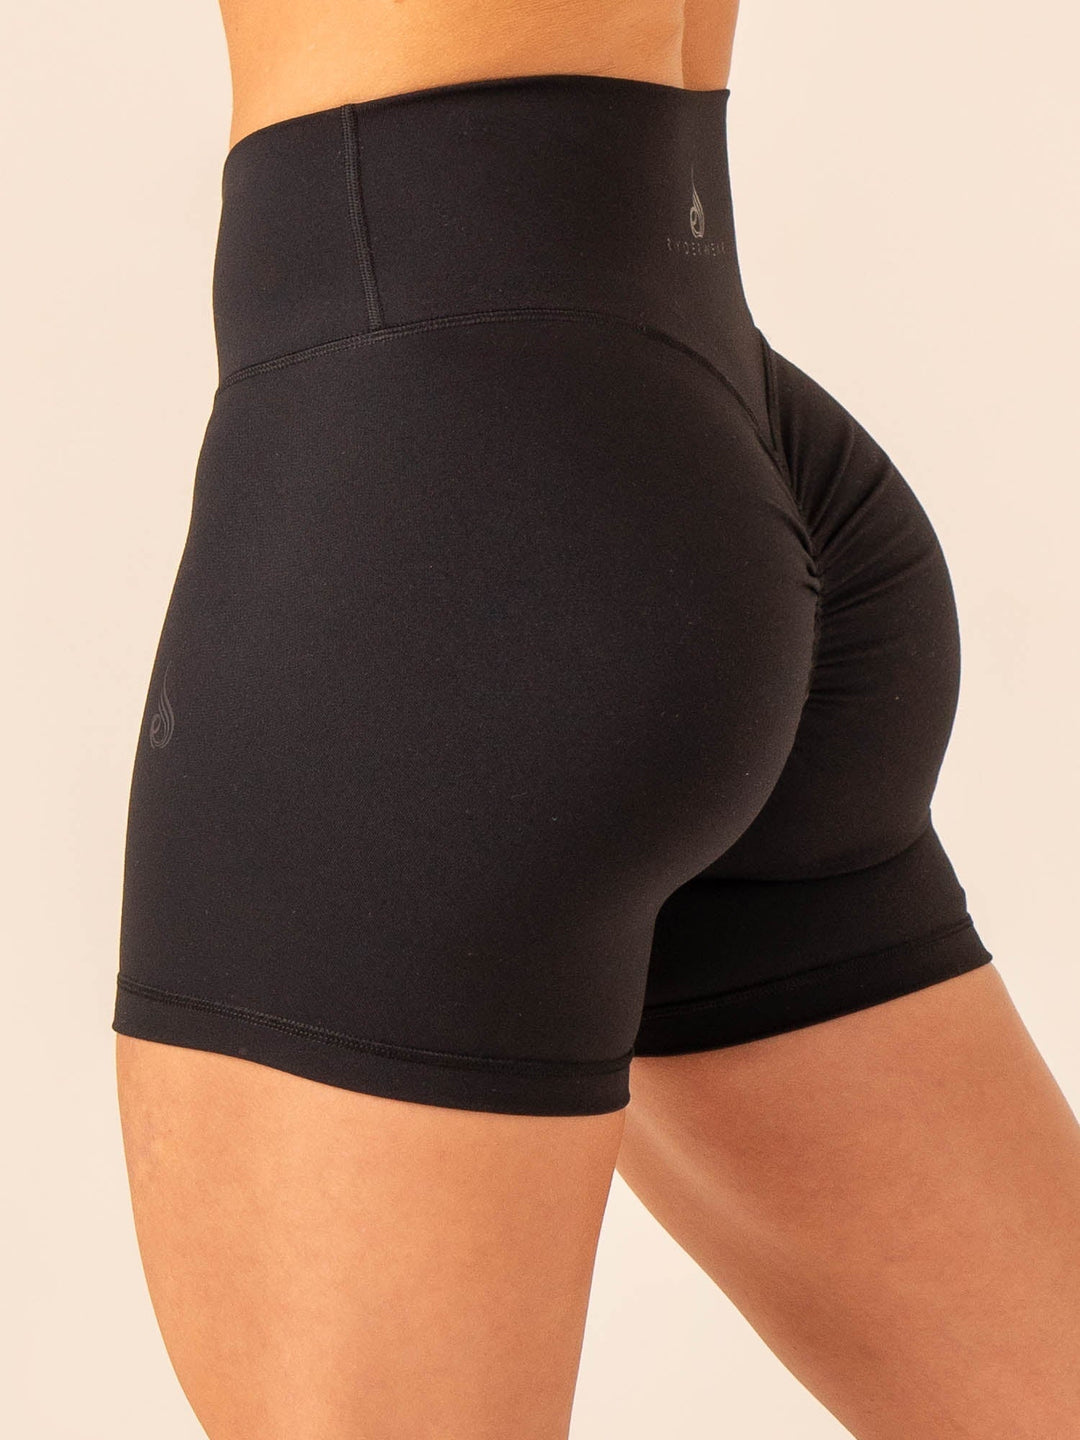 Extreme Scrunch Shorts - Black - Ryderwear